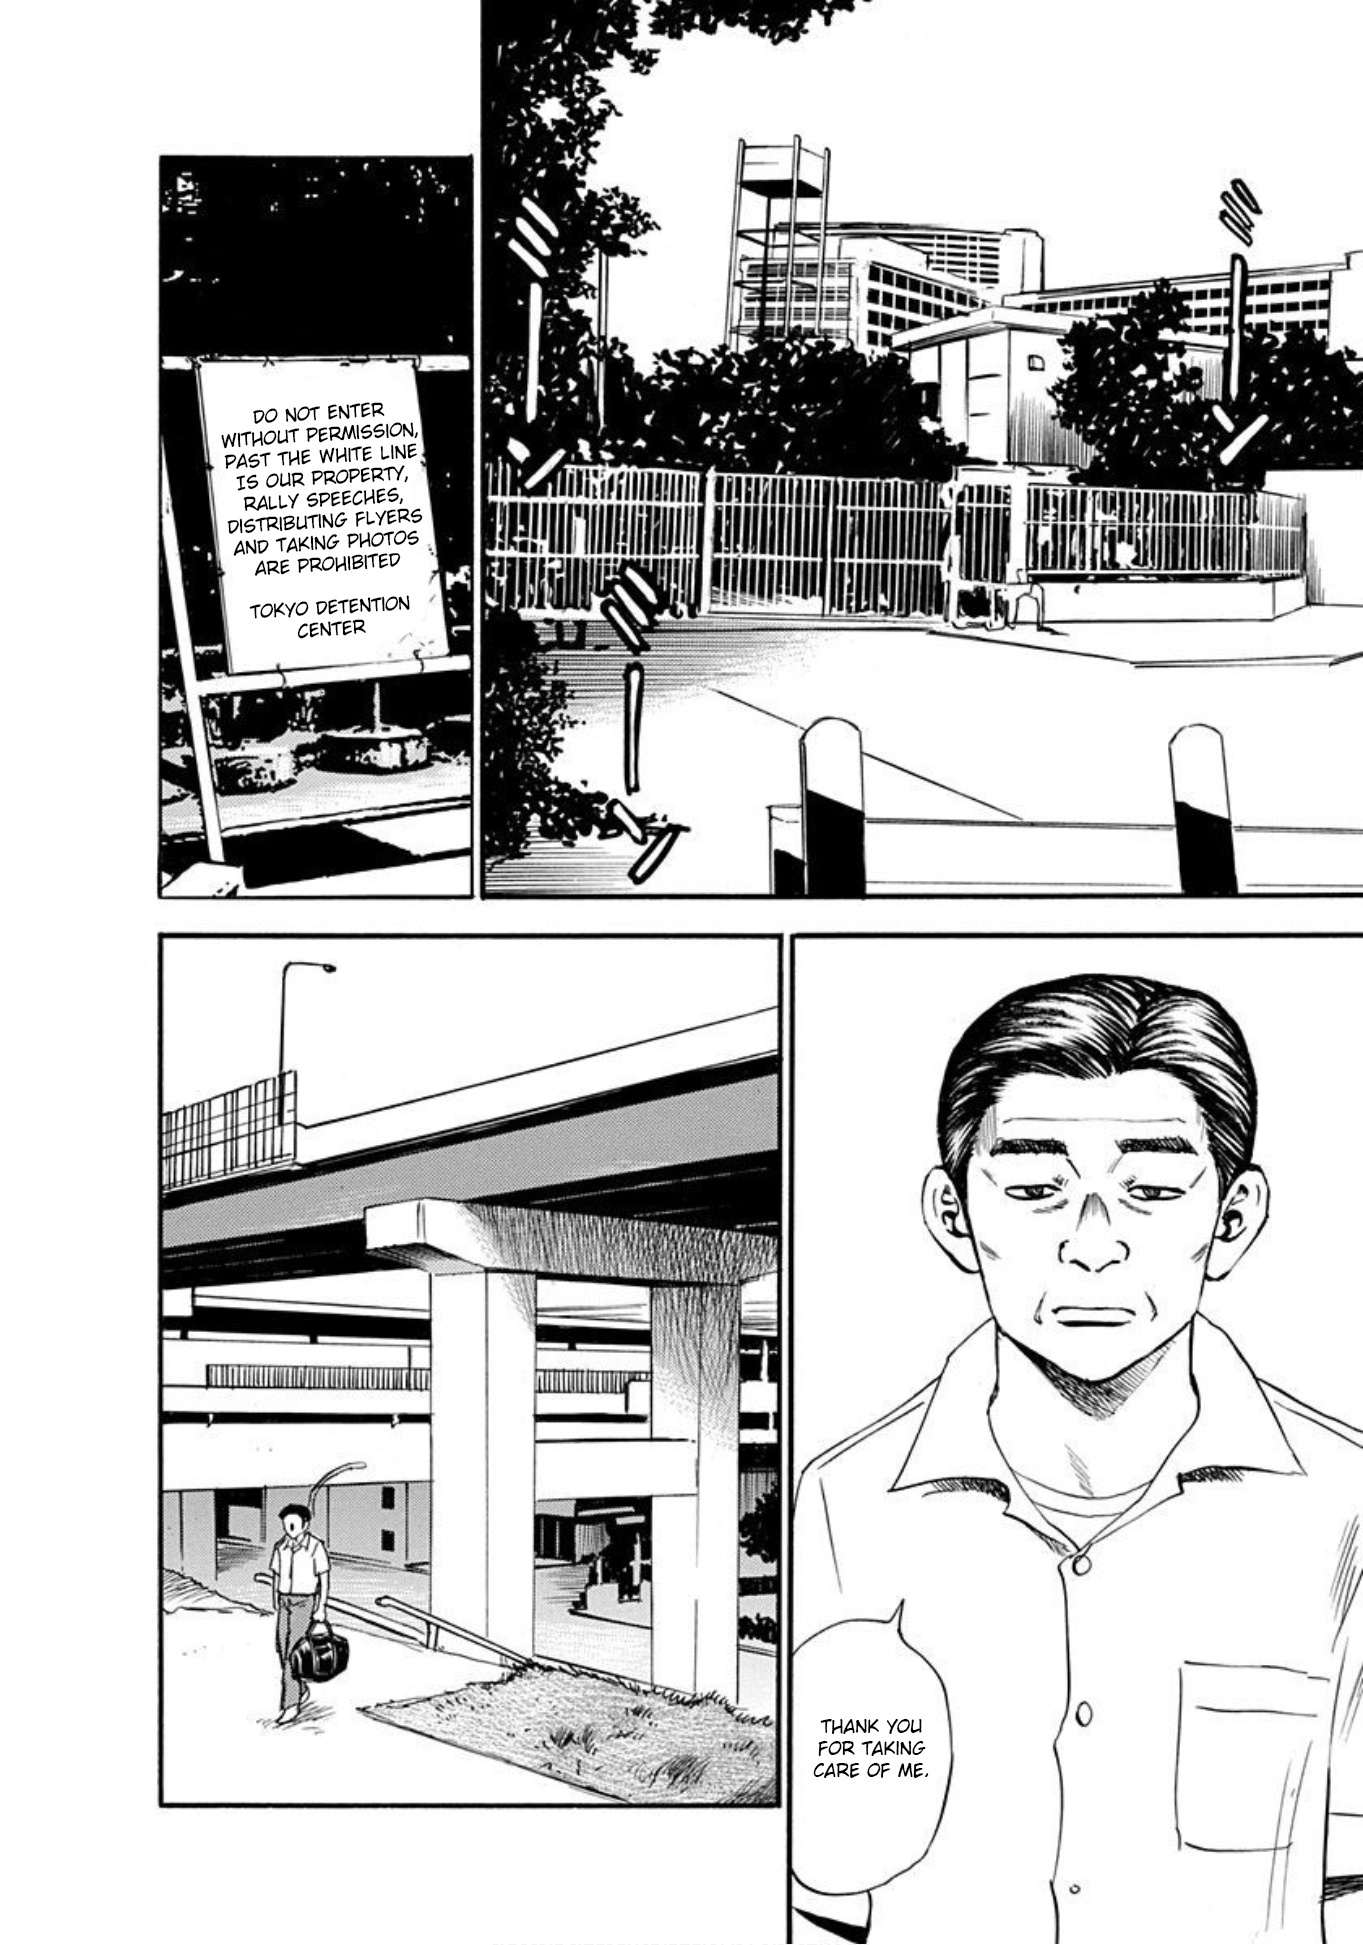 Uramiya Honpo Vol.9 Chapter 59: The Man Seeking Revenge - Picture 2